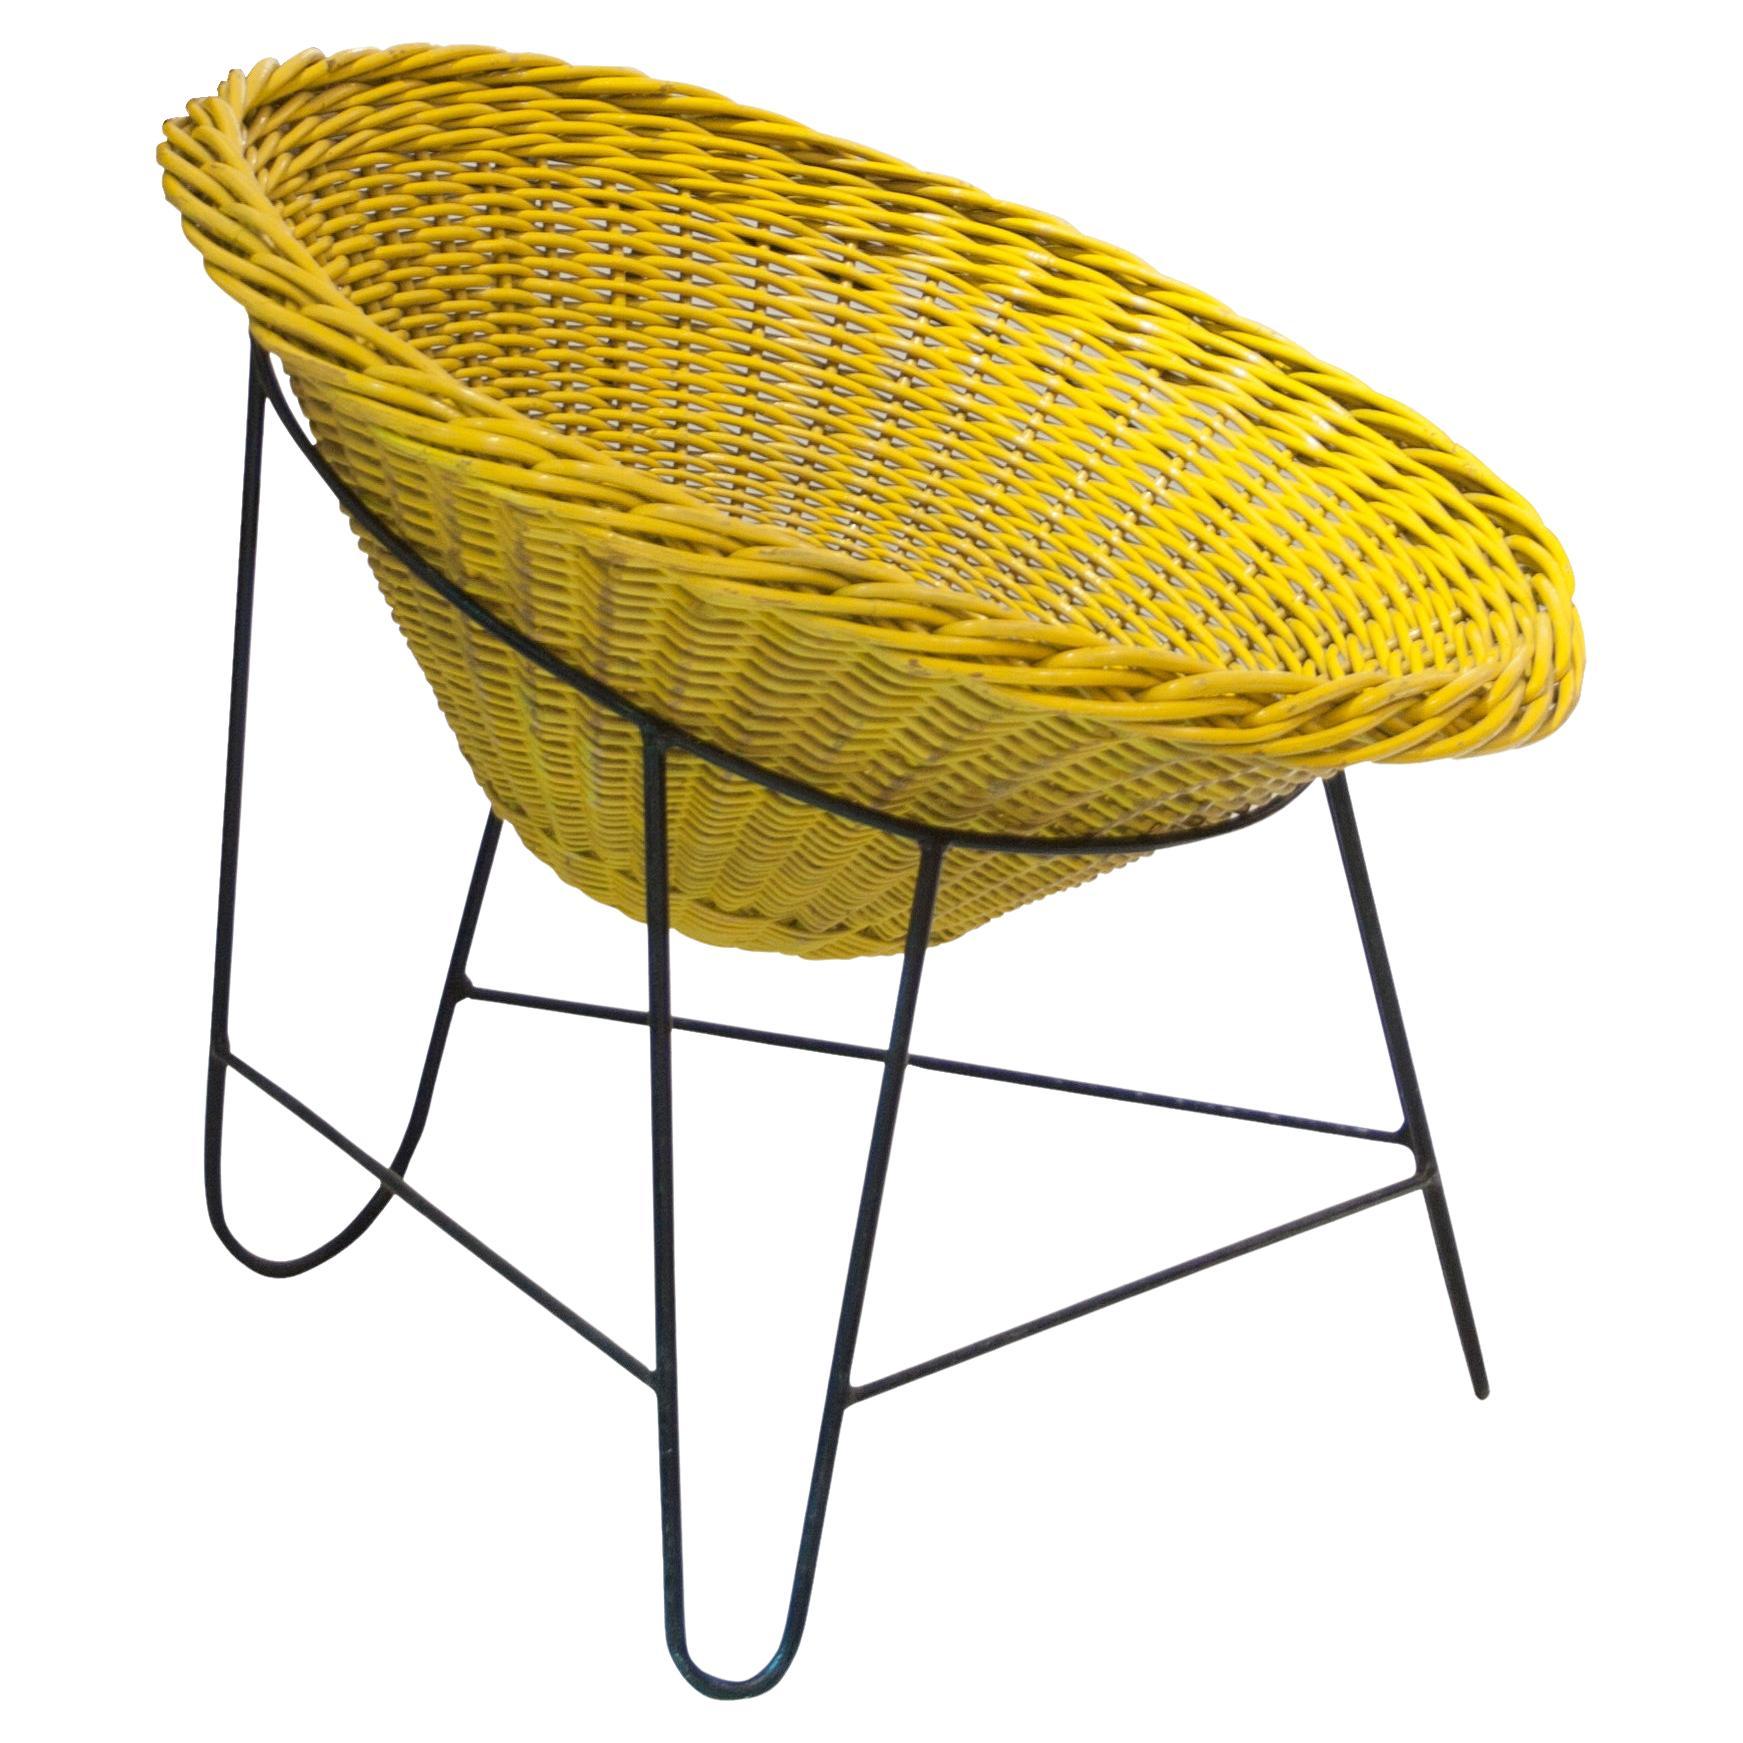 Chaise « Wicker » de Mathieu Matgot fabriquée avec du fer et de la fibre naturelle, France, 1950